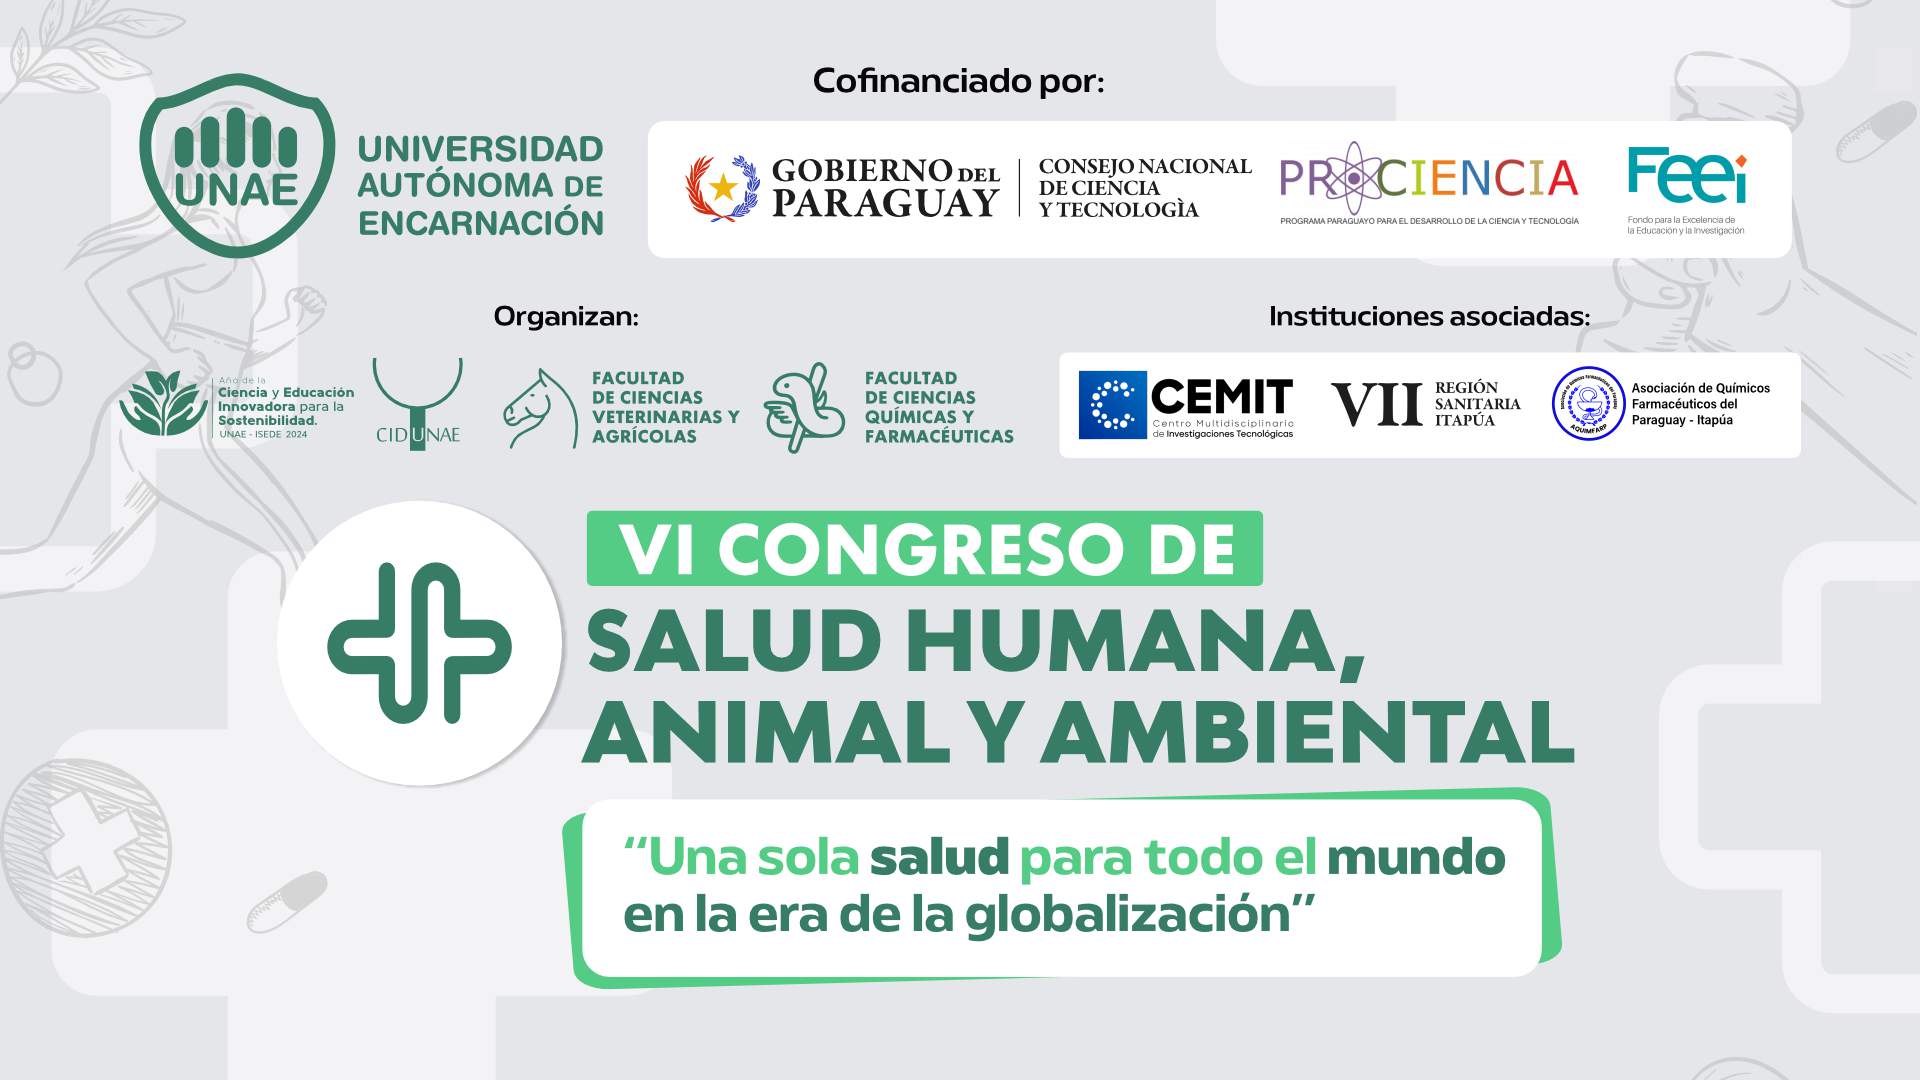 El VI Congreso de Salud Humana, Animal y Ambiental es cofinanciado por CONACYT con el apoyo del FEEI